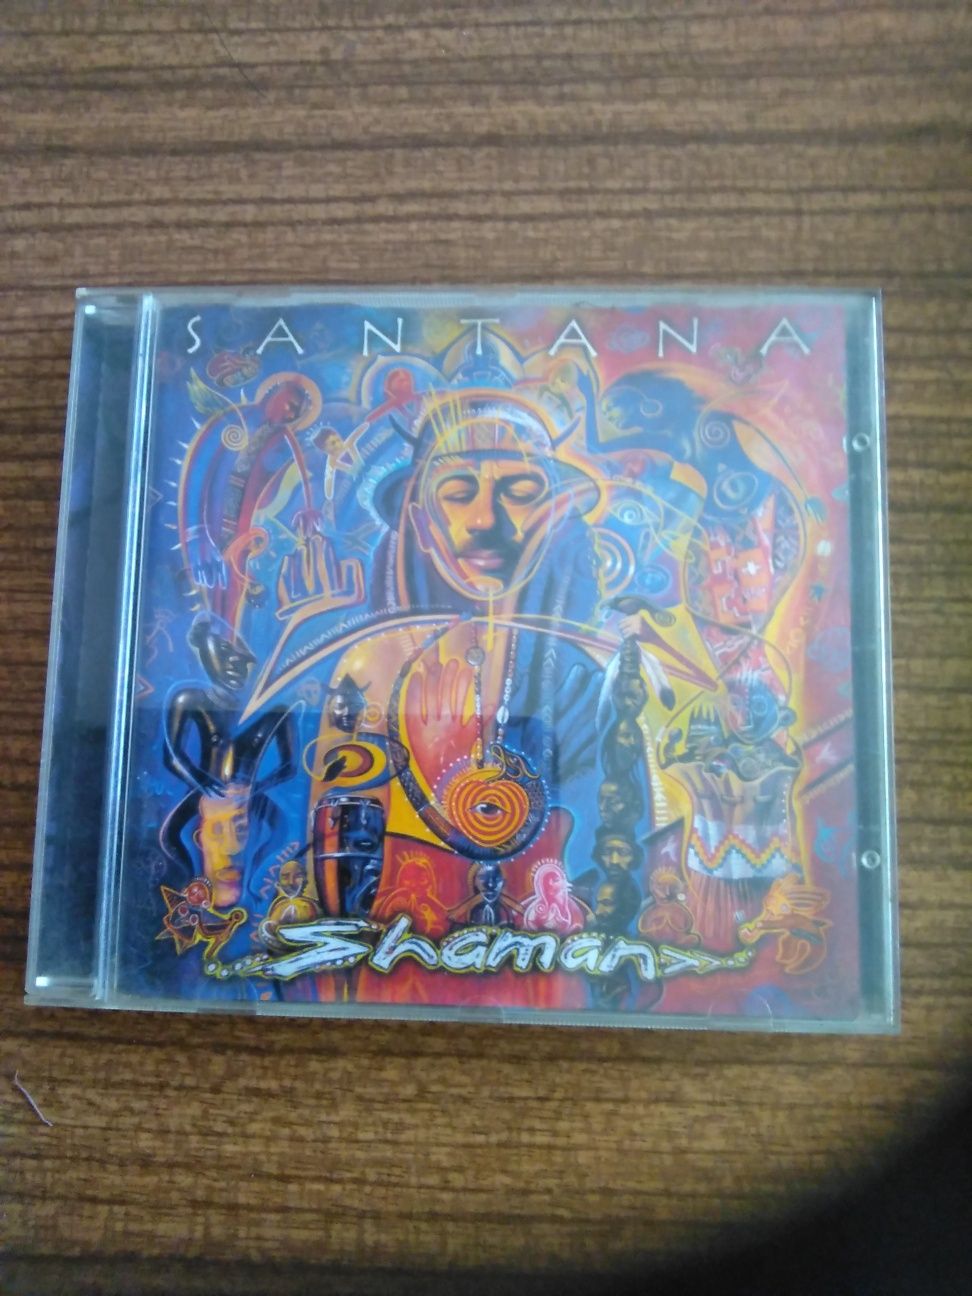 CD - Santana "Shaman"